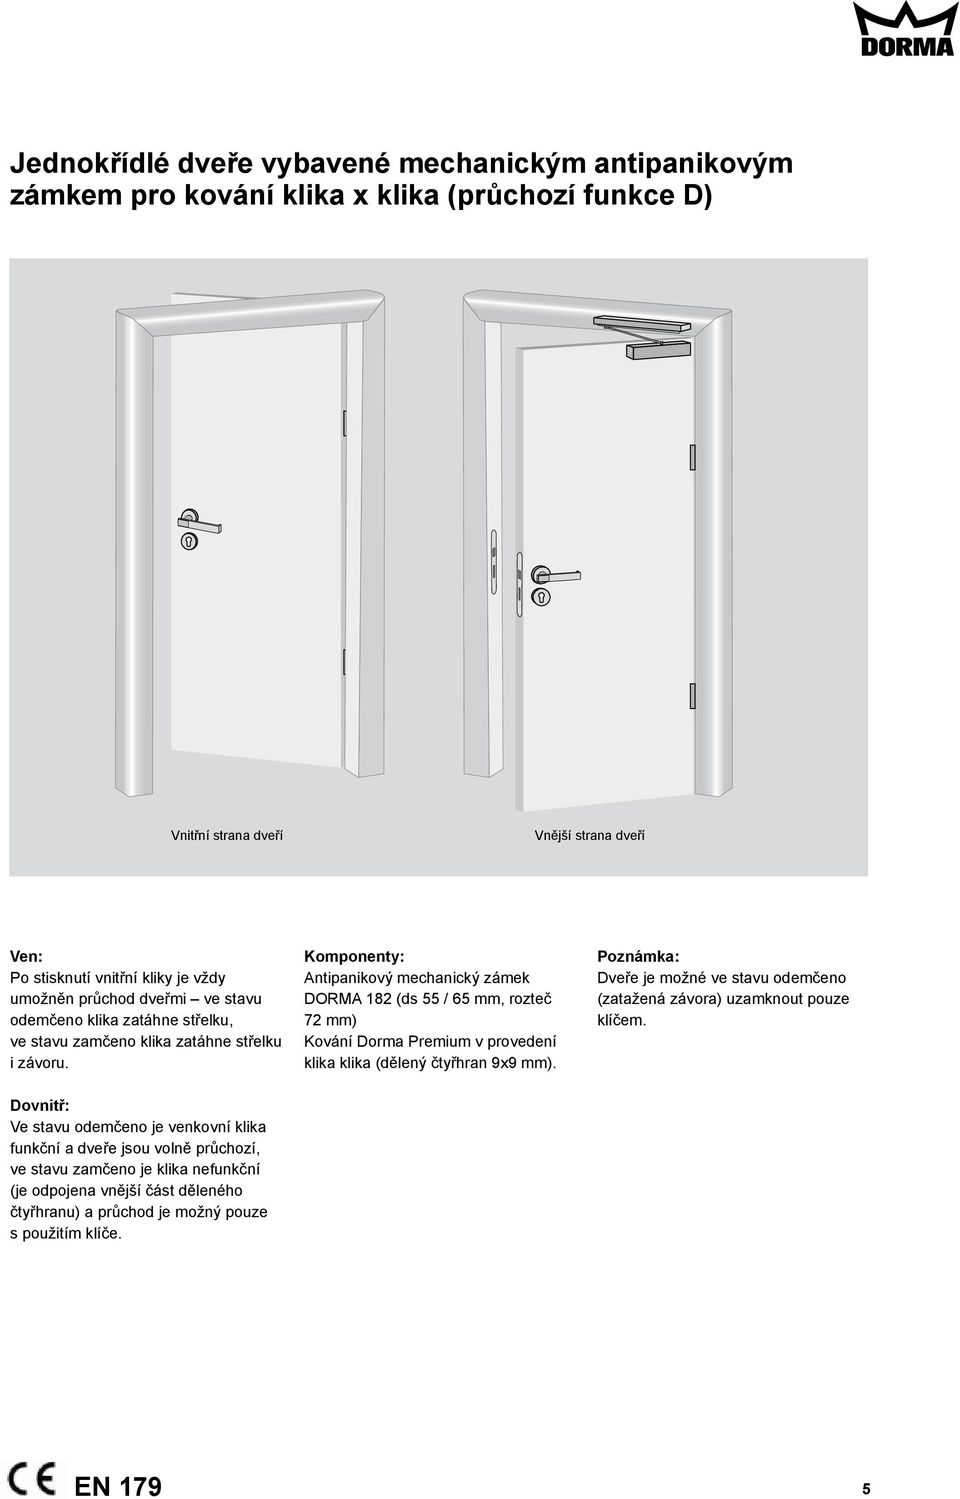 Dveře vybavené antipanikovými zámky a madly - PDF Free Download